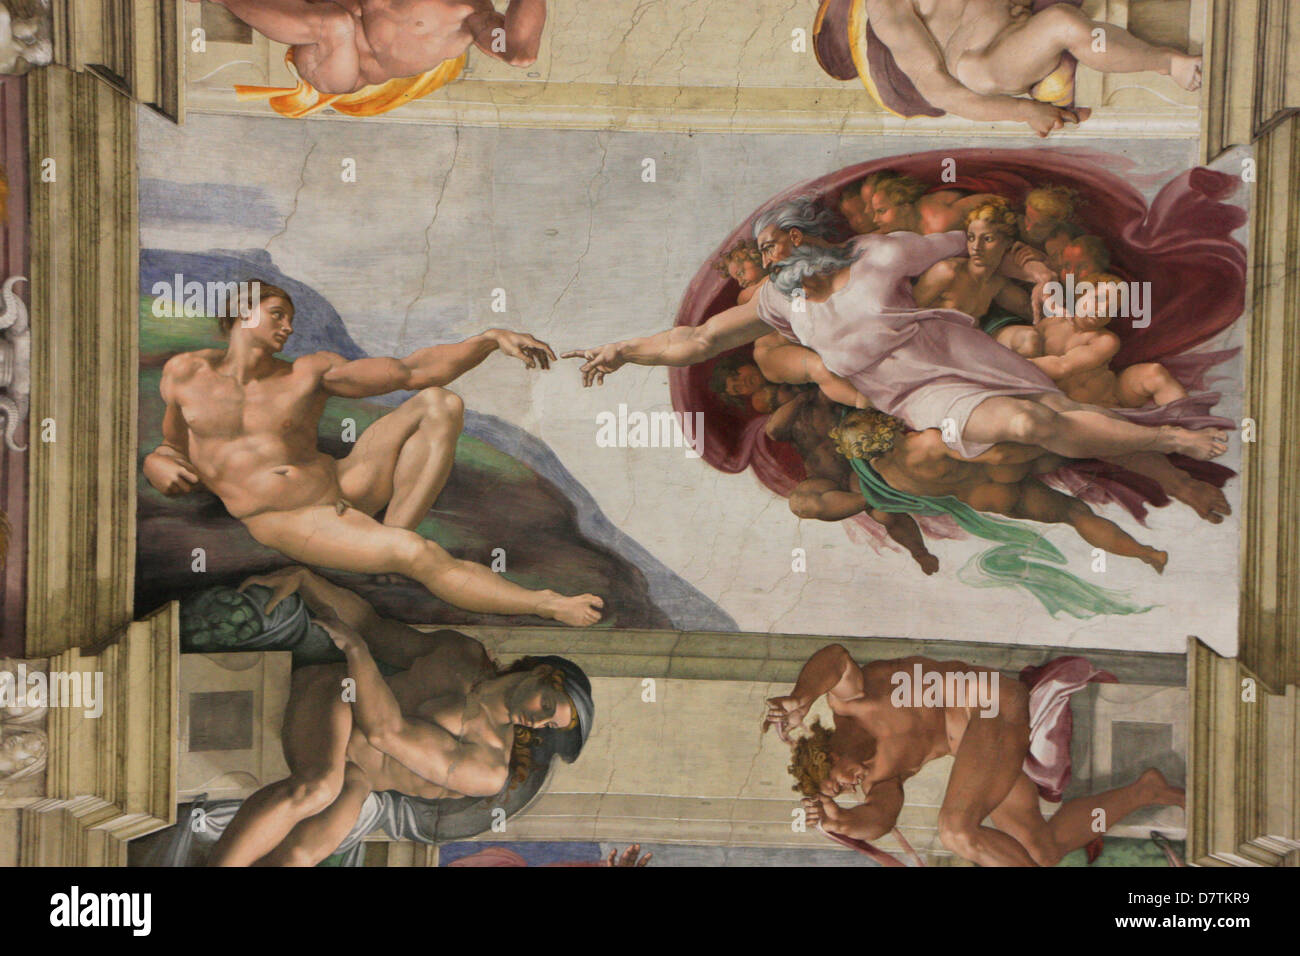 Sixtinische Kapelle Decke, Vatikan, Rom, Italien Stockfoto